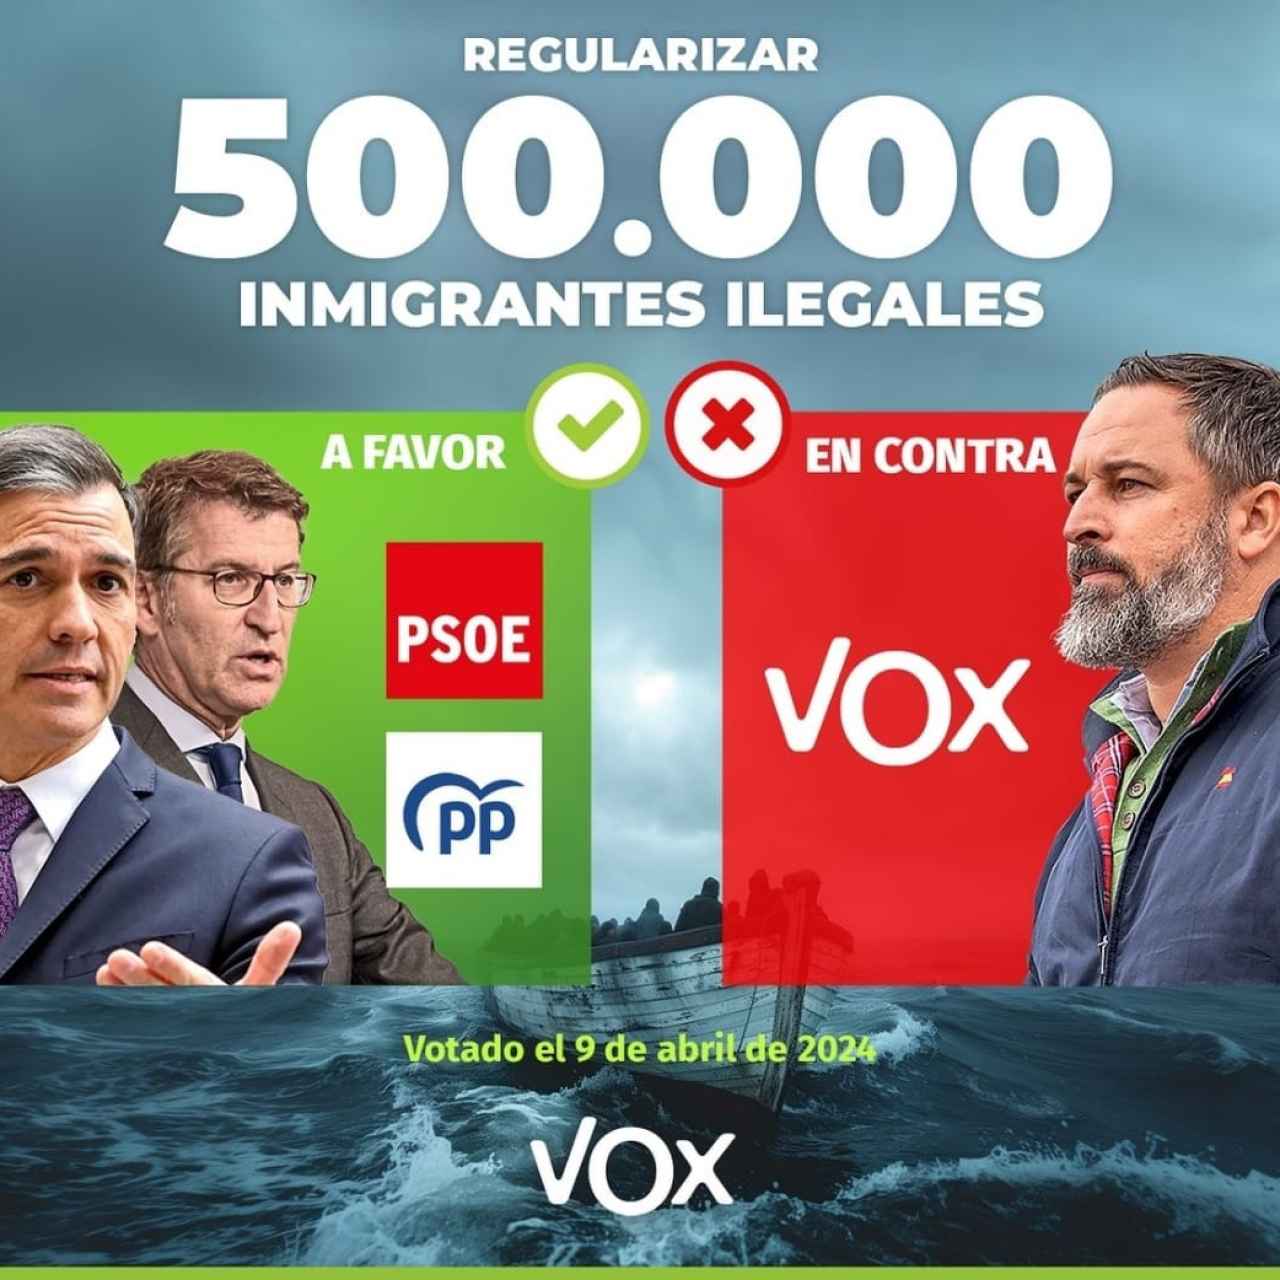 Fotomontaje publicado en el perfil de Instagram de Vox España tras el debate que admitió a trámite la ILP para la regularización de inmigrantes